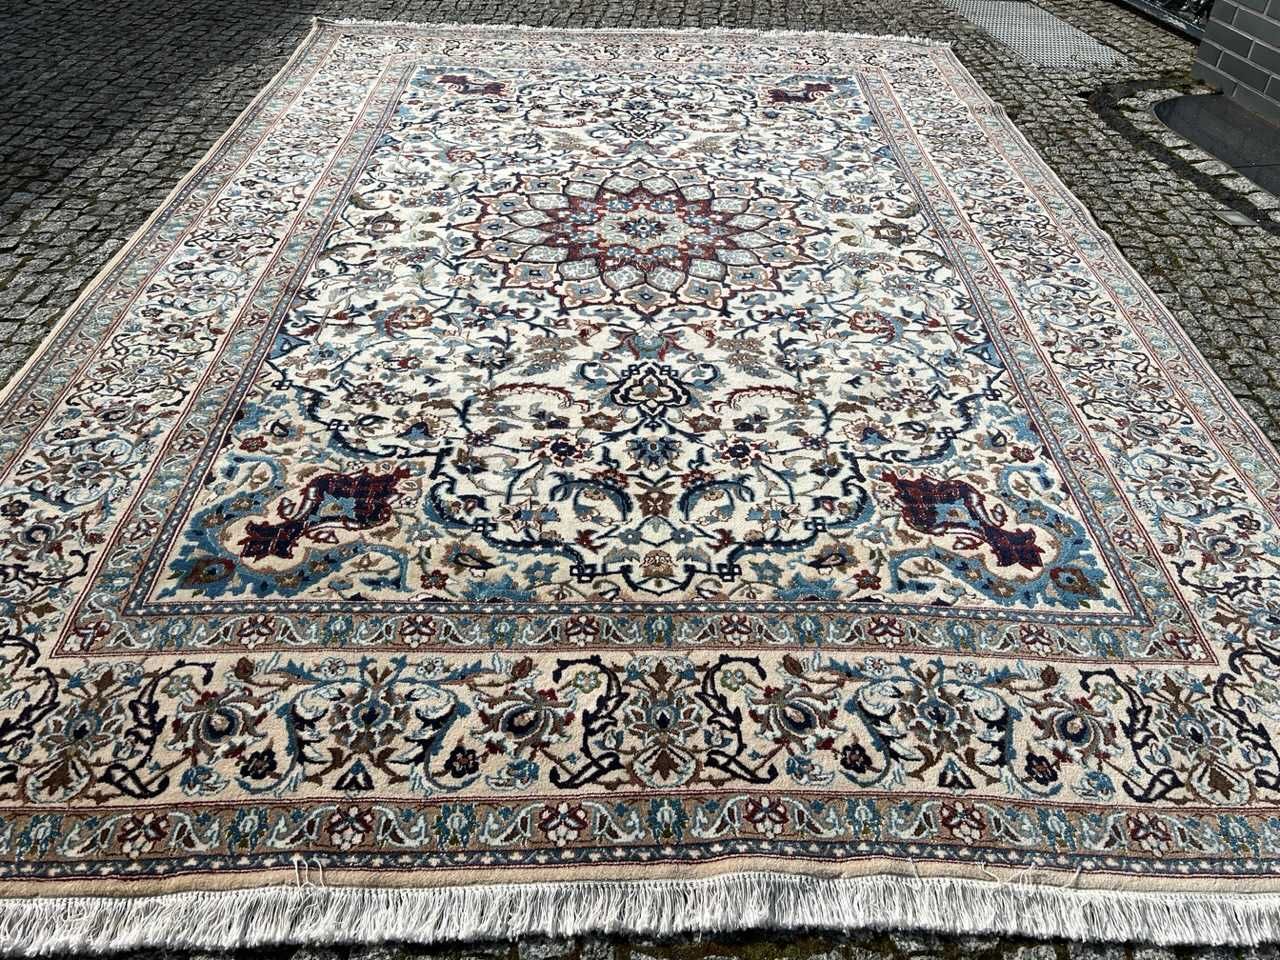 Nowy dywan perski Nain z jedwabiem 350x250 galeria 29 tys